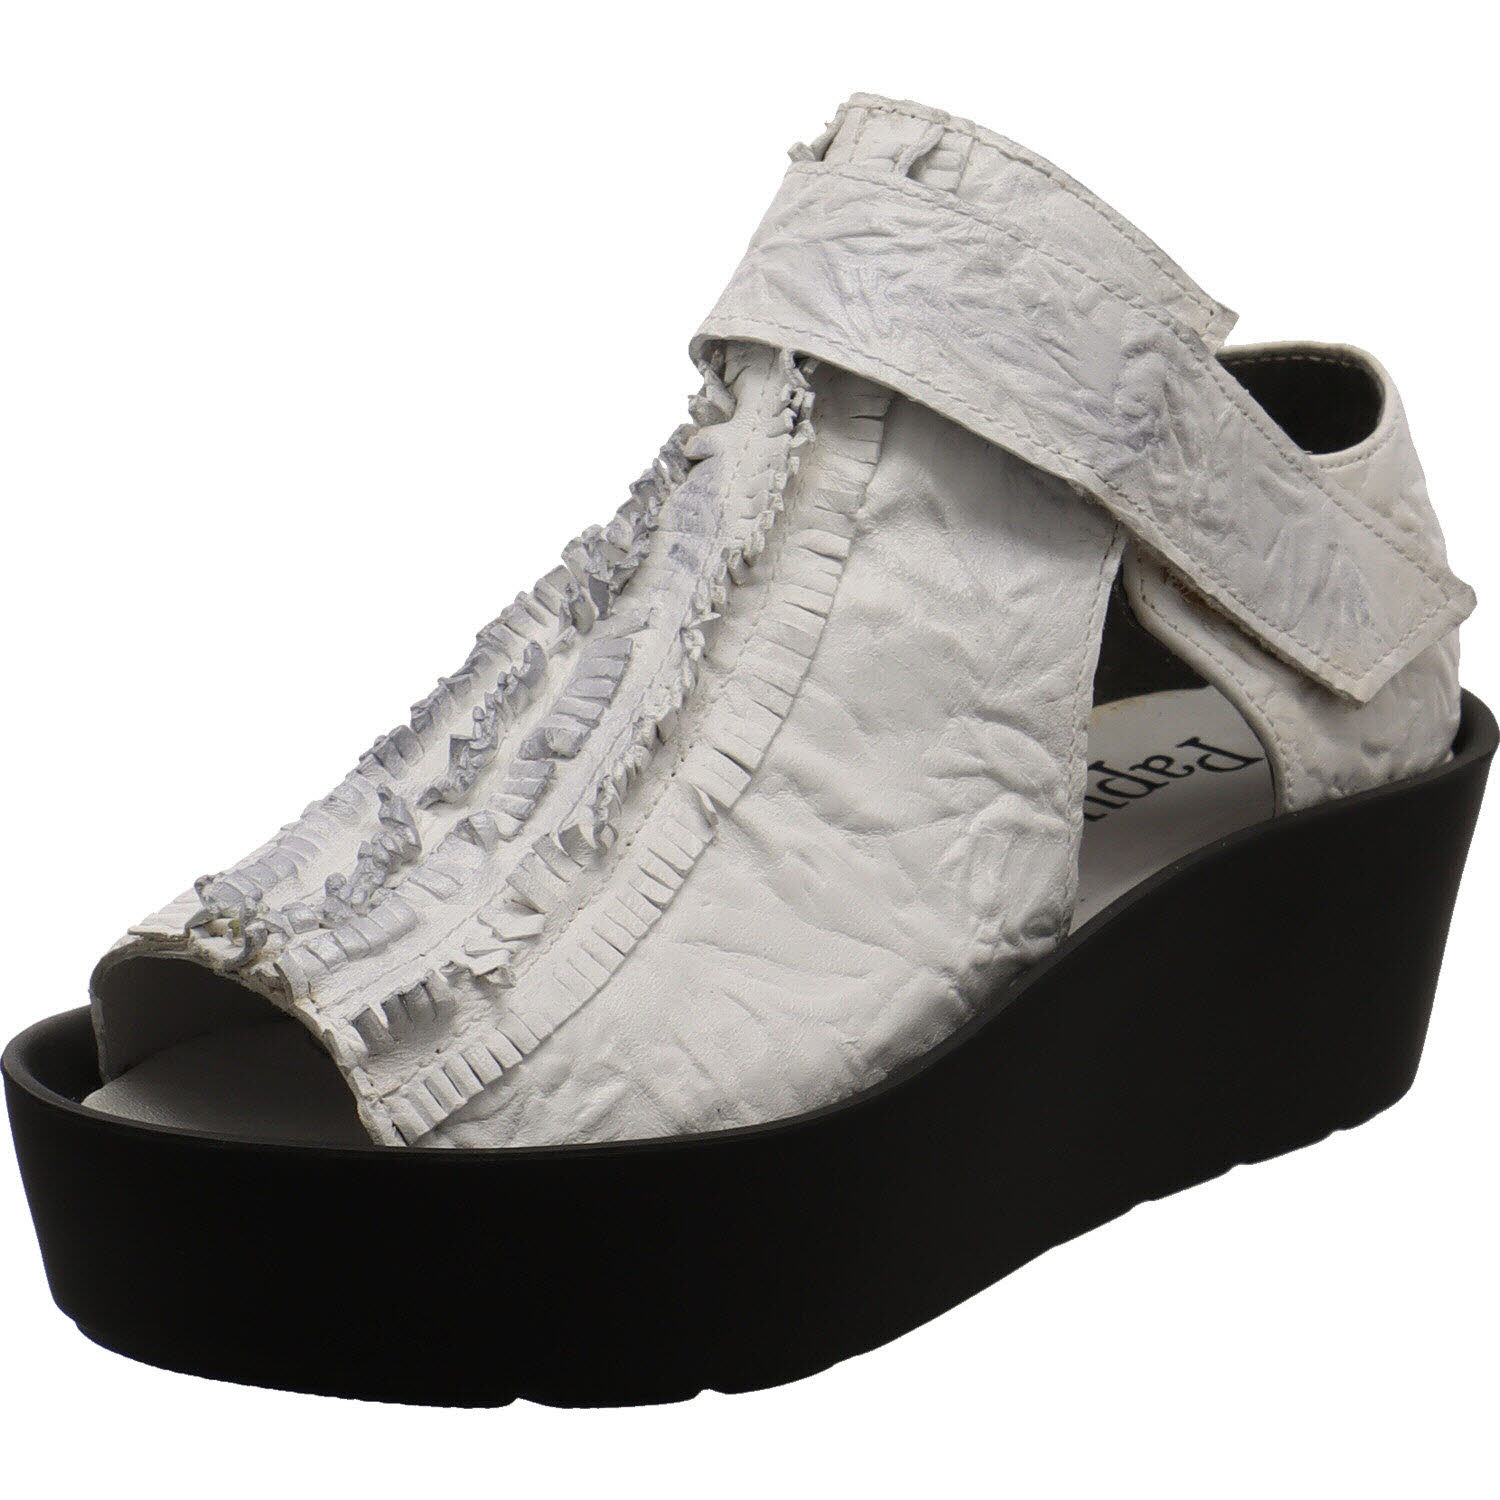 Damen Sandalette von Papucei auch in Weiß erhältlich